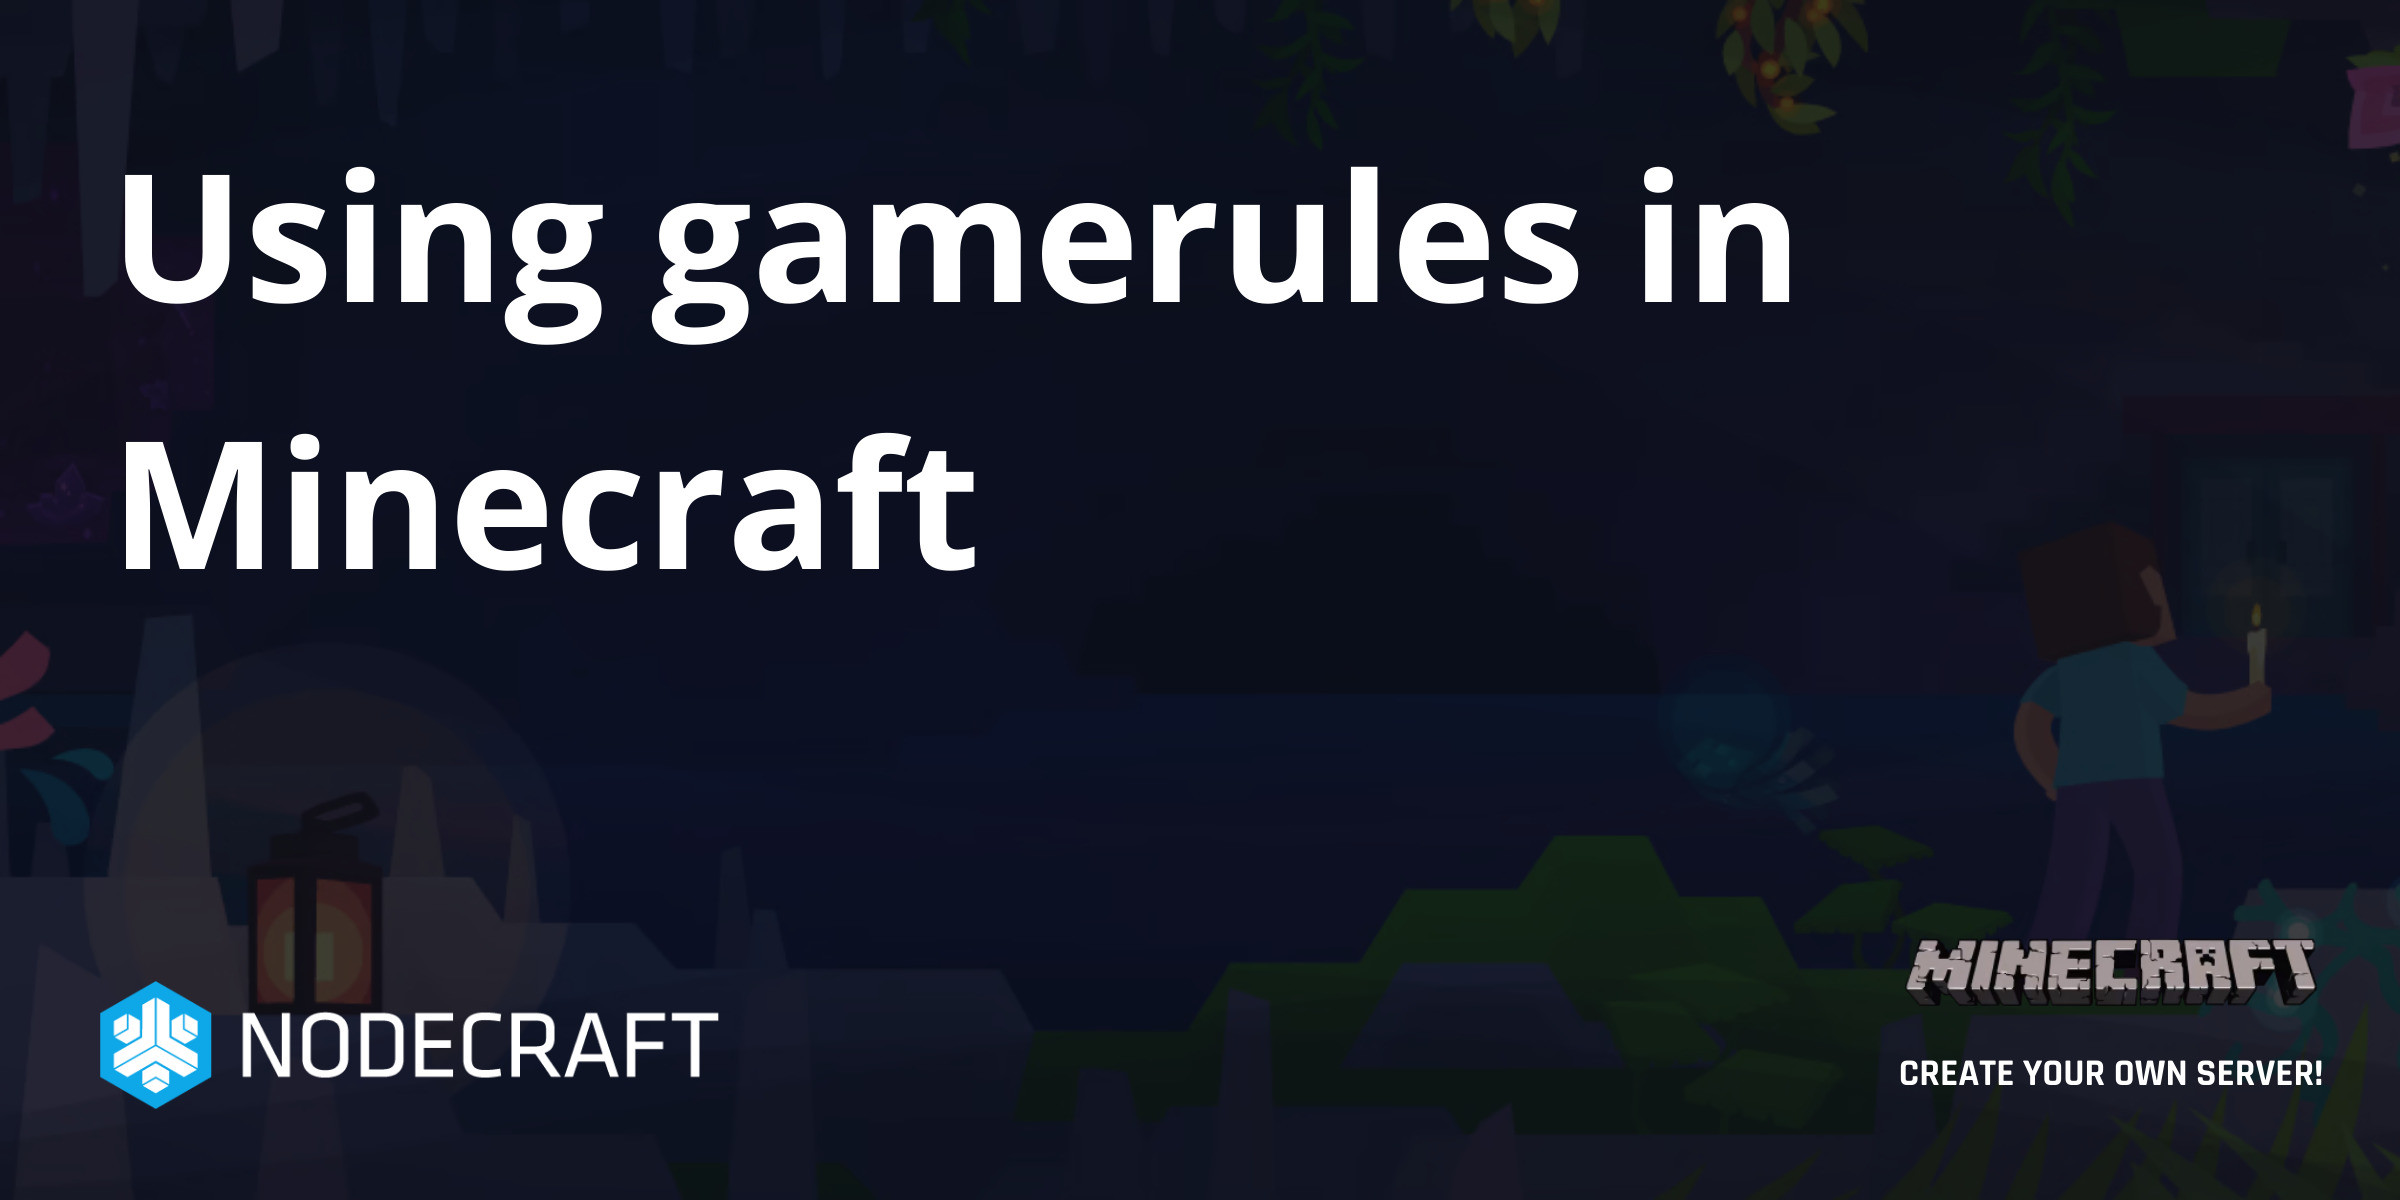 Minecraft : Commandes, la liste complète - Minecraft - GAMEWAVE